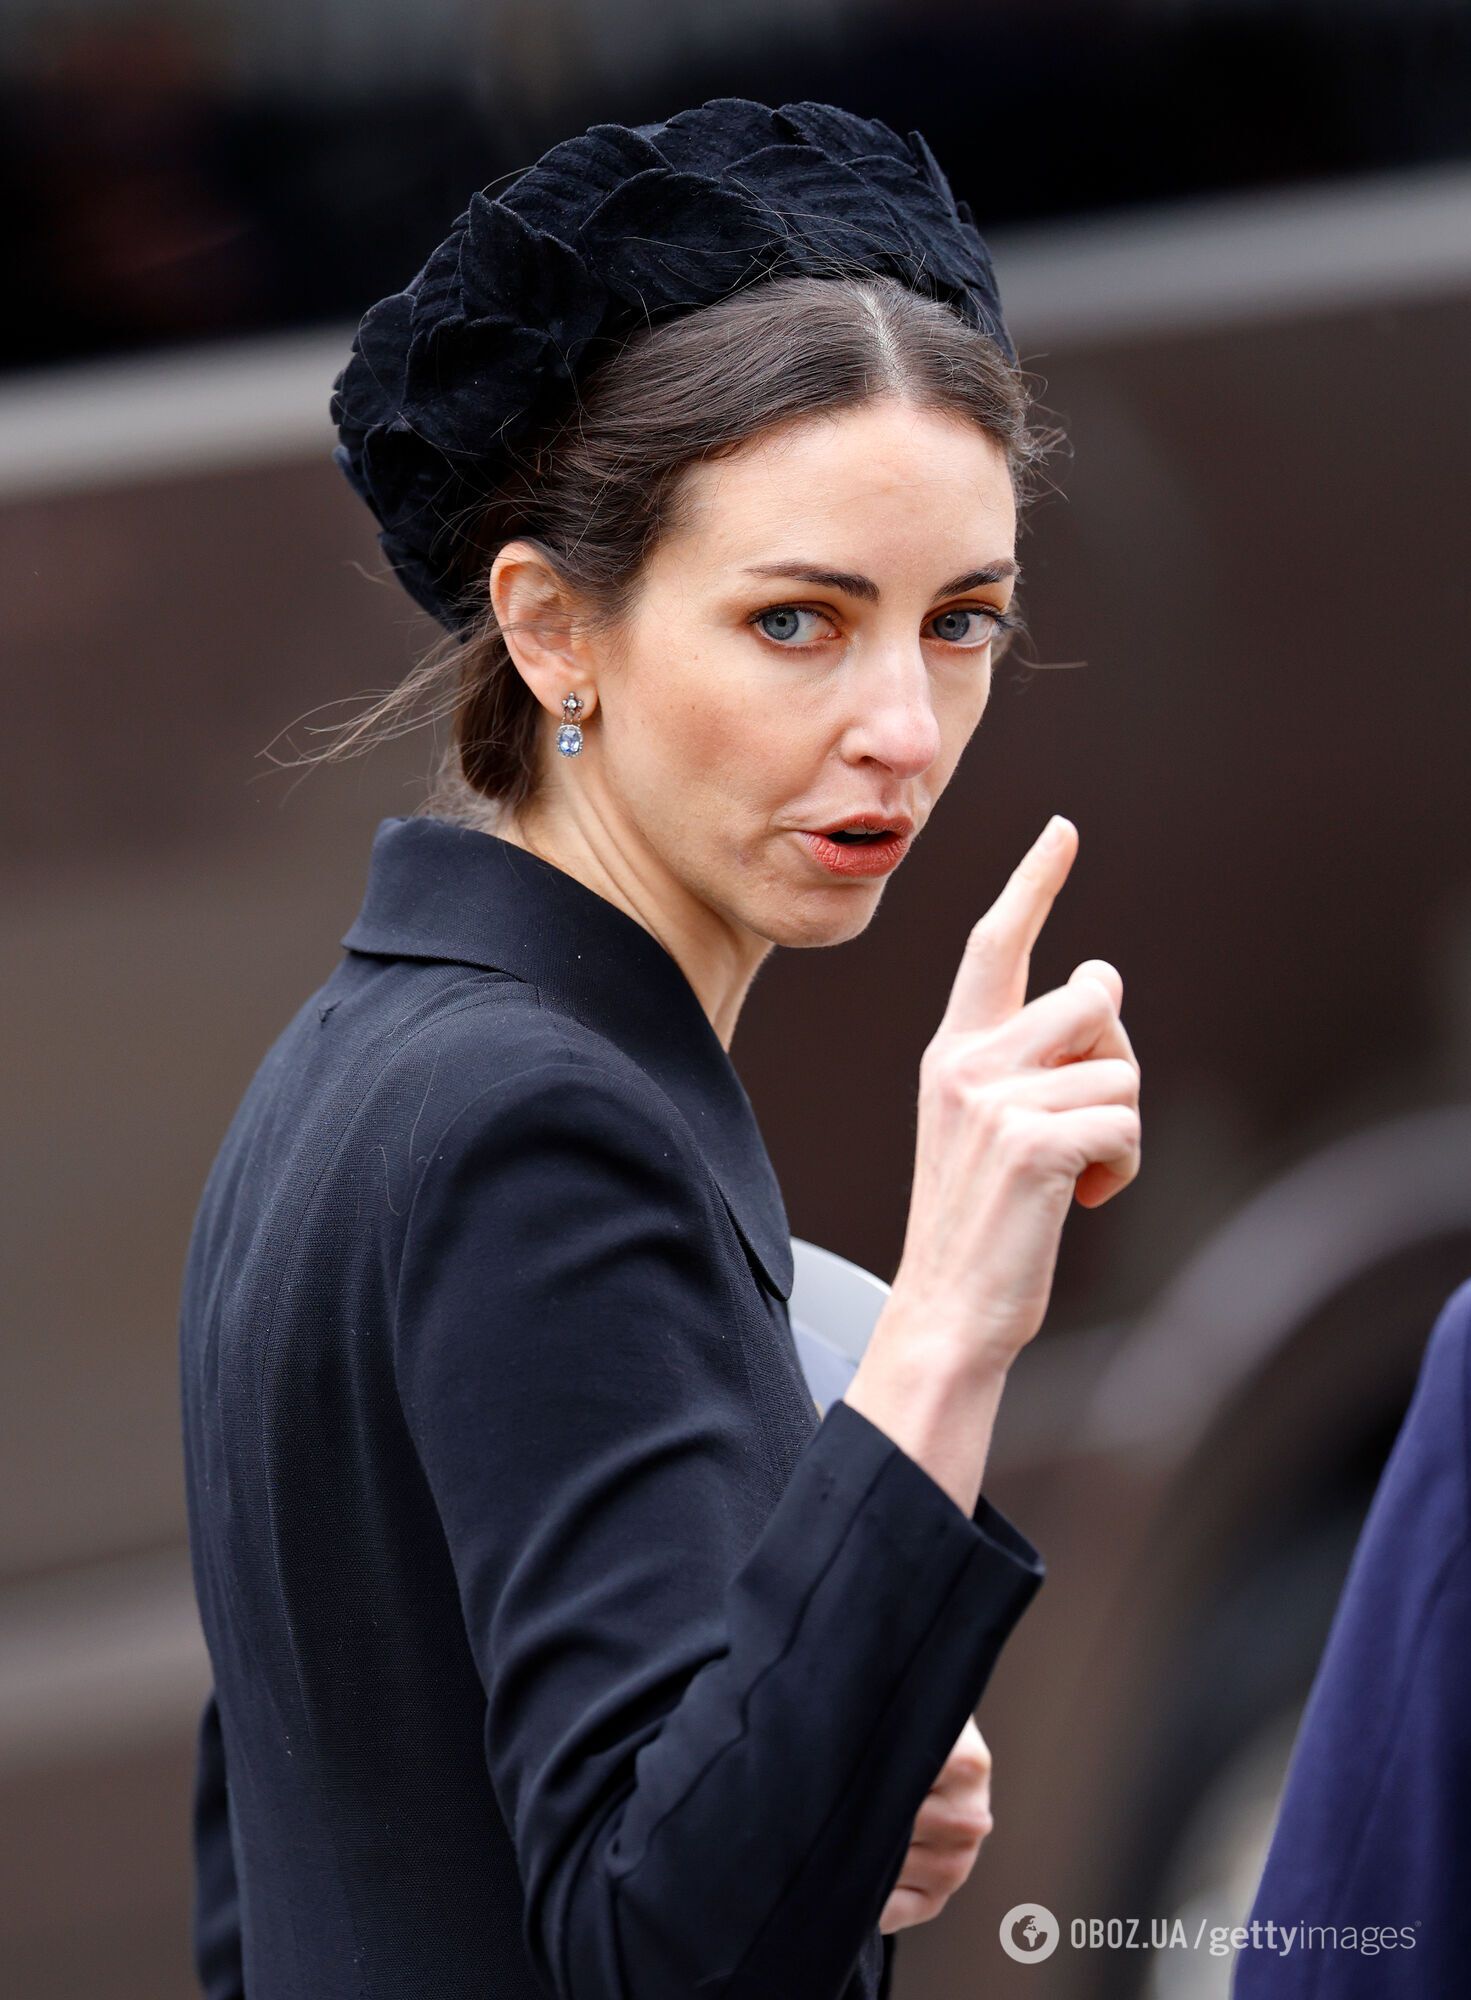 Кейт Миддлтон впервые заметили на улице после слухов об измене принца Уильяма и проблем со здоровьем